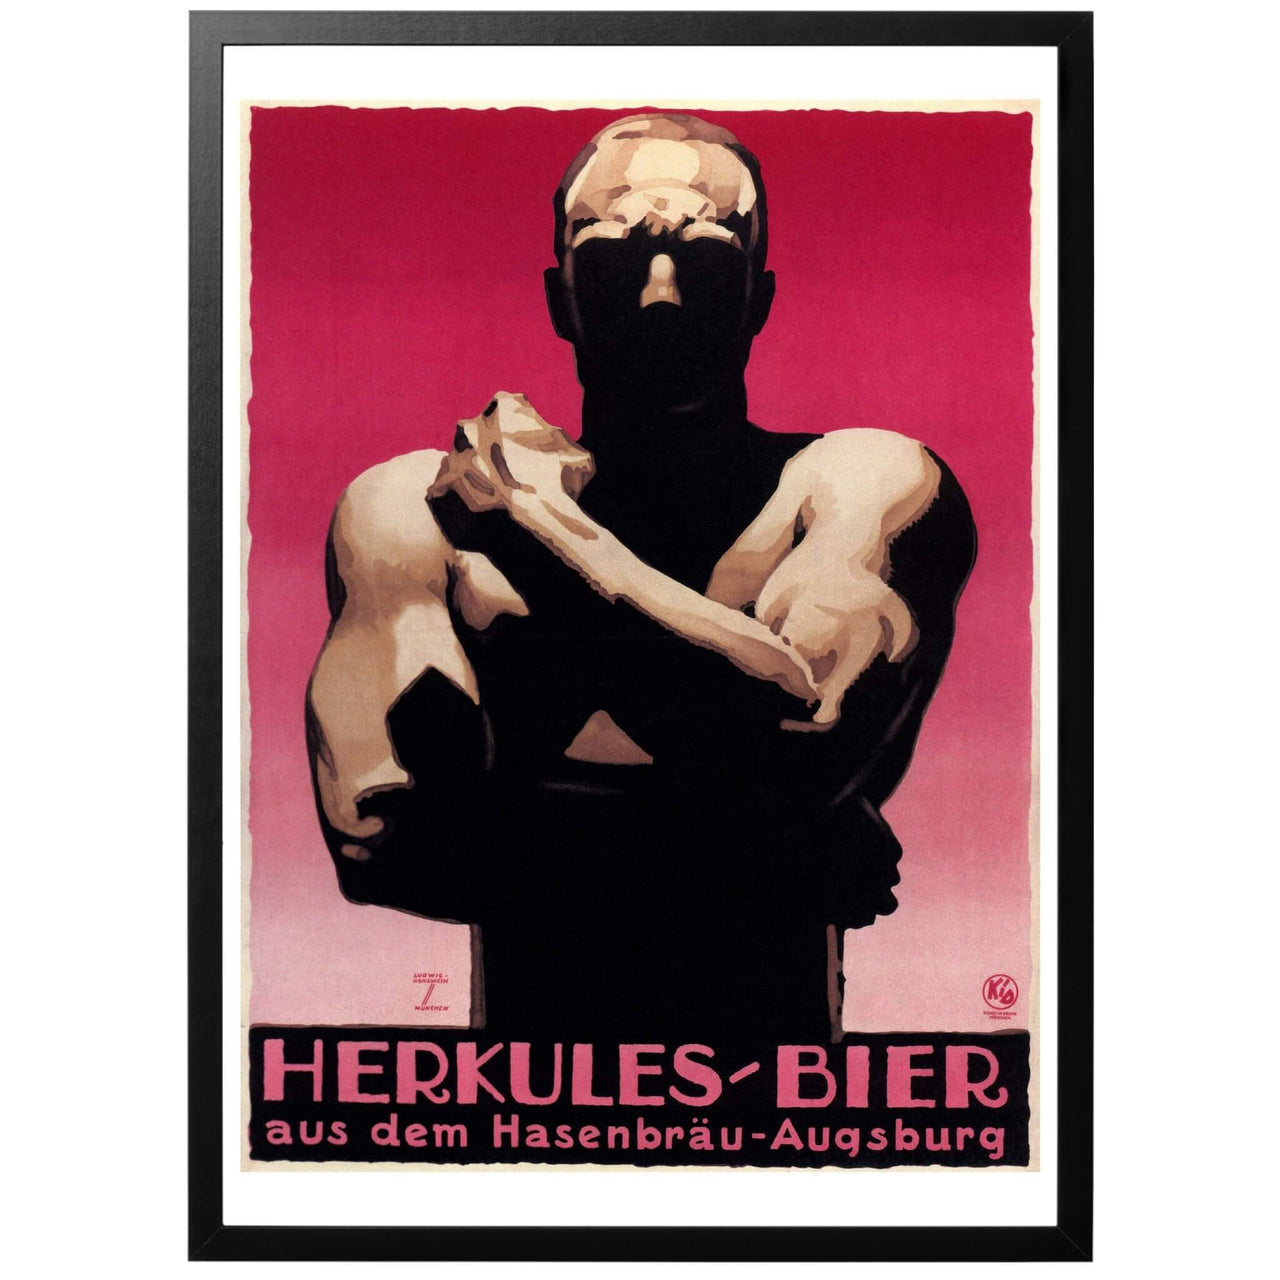 Herkules Bier aus dem Hasenbräu-Augsburg - "Herkules öl från Hasenbräu-Augsburg" Tysk reklamaffisch från 1926 som marknadsför ölen Herkules från Hasenbräu-Augsburg. I bakgrunden en muskulös man - kanske Herkules själv?